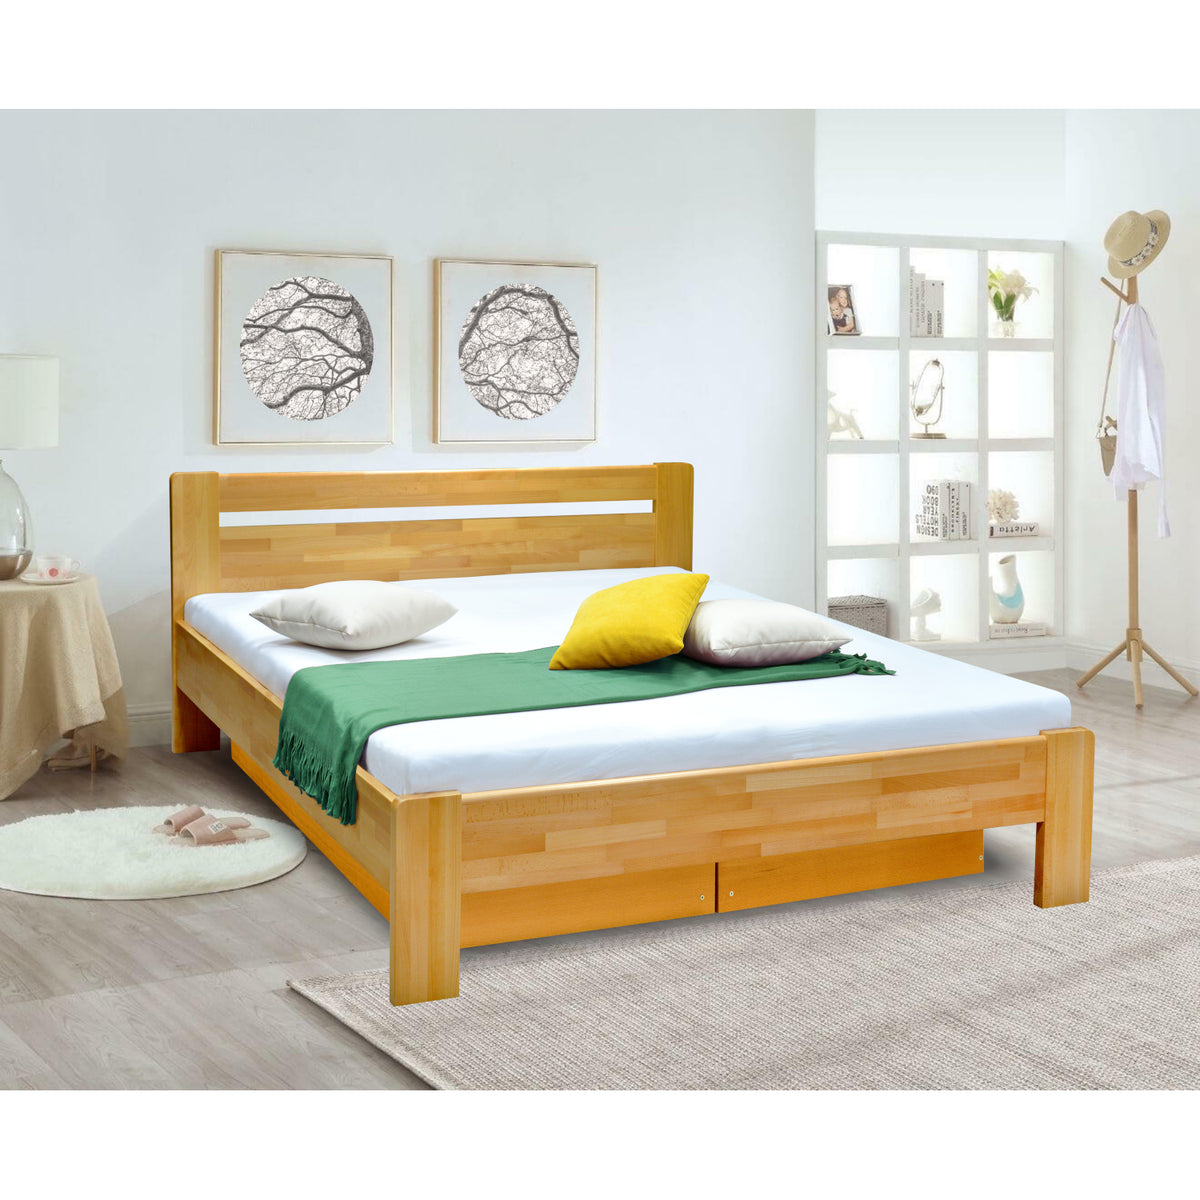 Masivní postel Maribo 2, 160x200, vč. roštu, bez matr., sv.ořech